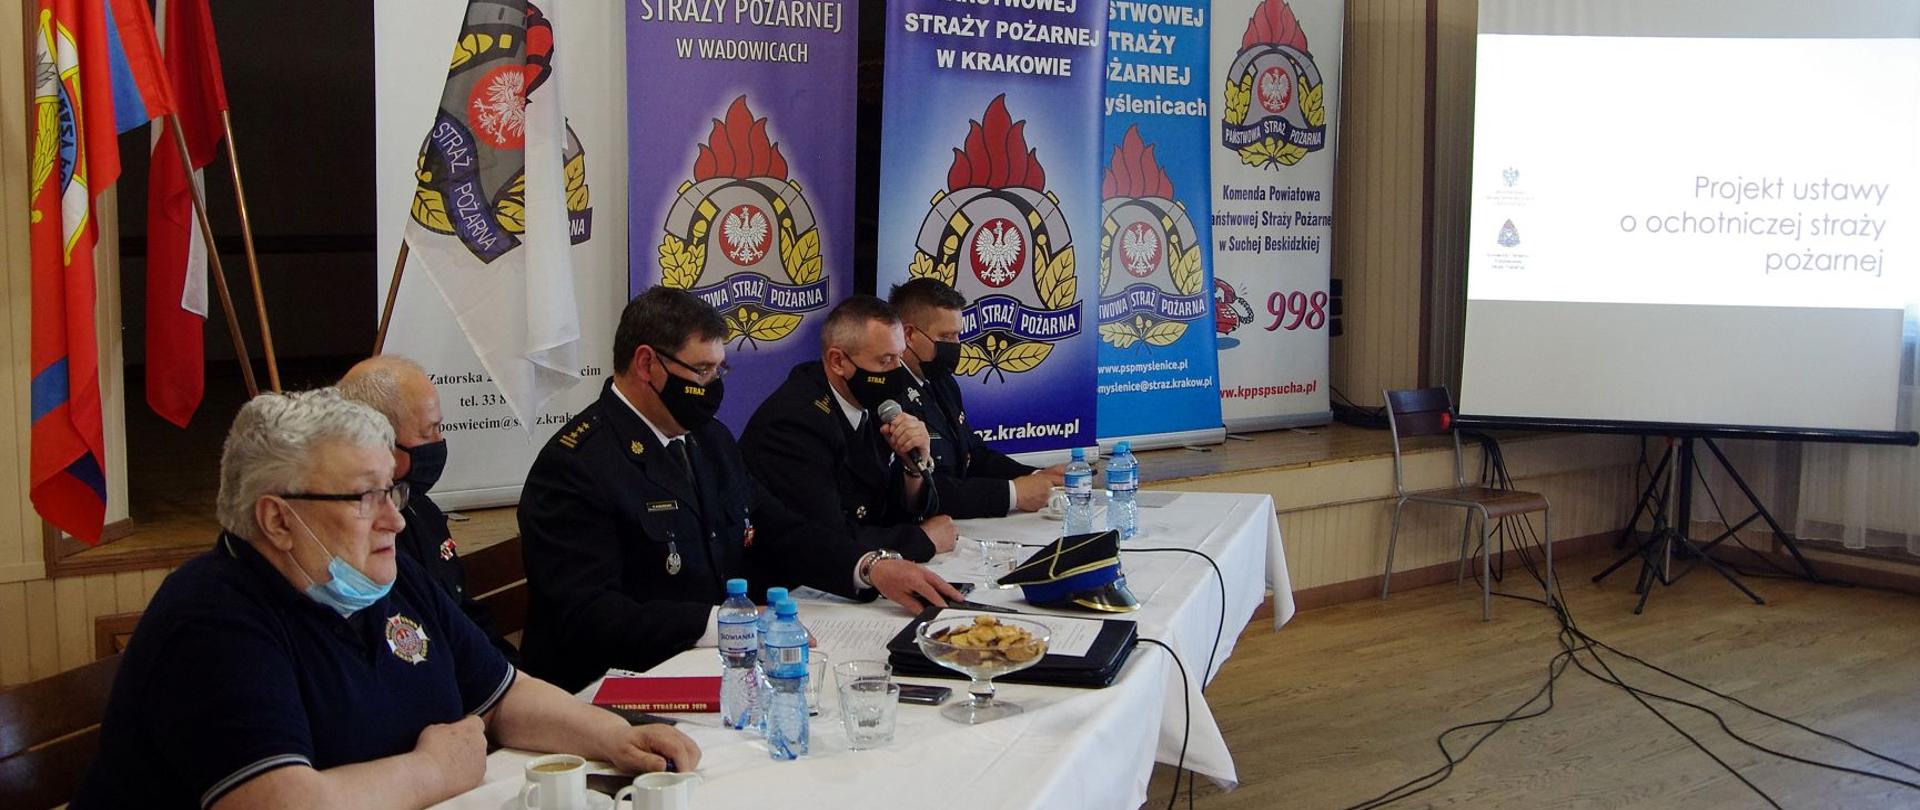 Na zdjęciu widzimy strażaków PSP i OSP siedzących przy stole wewnątrz remizy OSP Chocznia. Uczestniczą oni w spotkaniu mającym na celu konsultację zapisów projektu ustawy o OSP. W tle widoczne banery Komendy Wojewódzkiej i Komend Powiatowych, których przedstawiciele uczestniczą w spotkaniu.